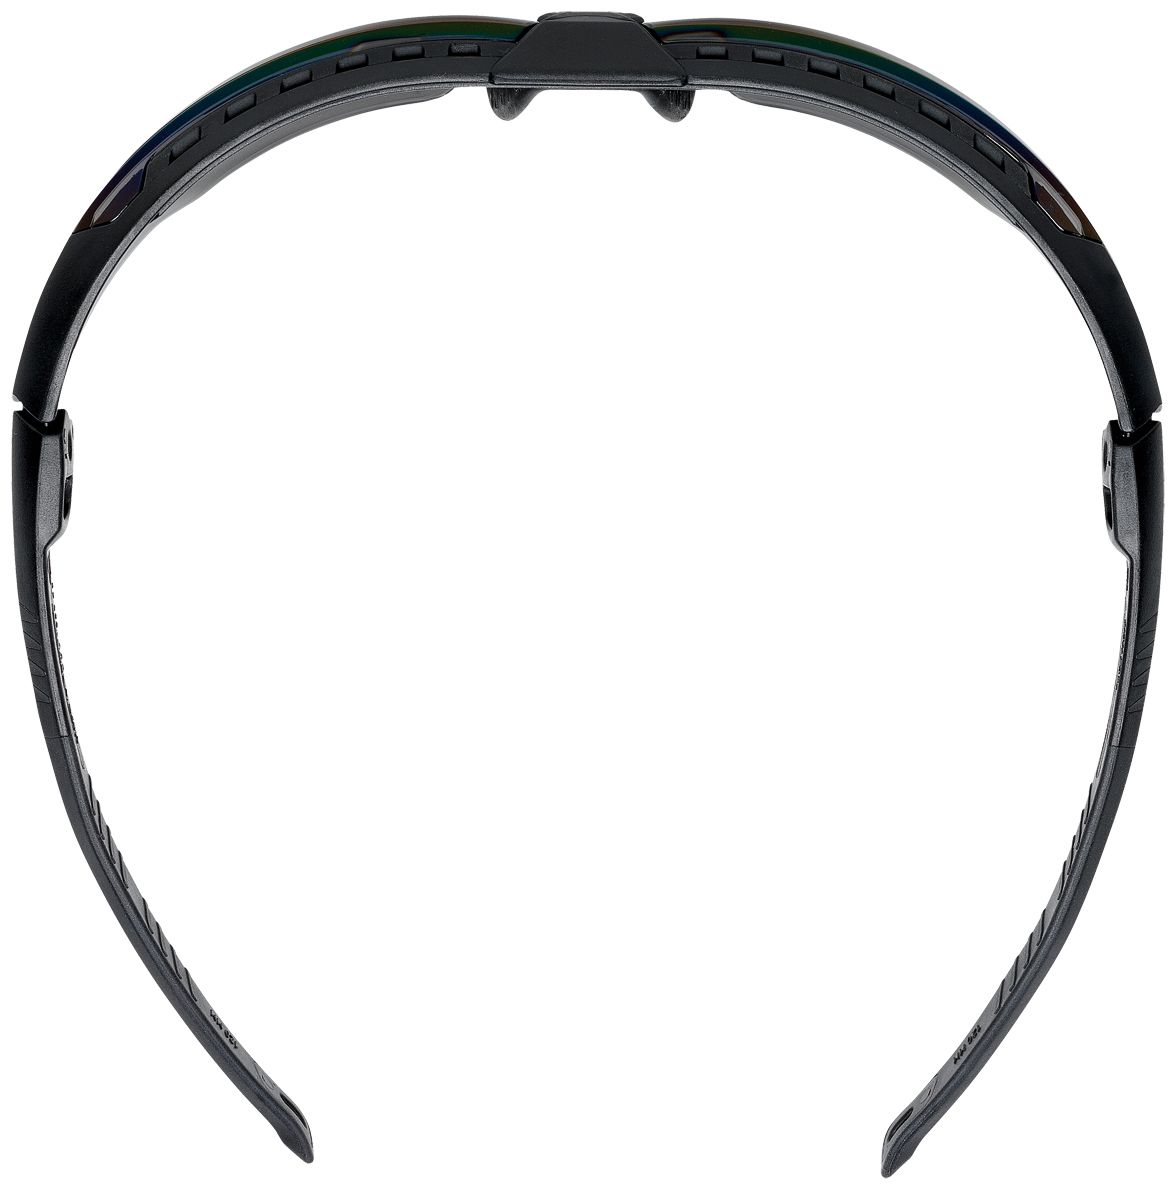 Honeywell Avatar Schutzbrille - kratz- & beschlagfest beschichtet - EN 166/170 - Schwarz/Blauspiegel